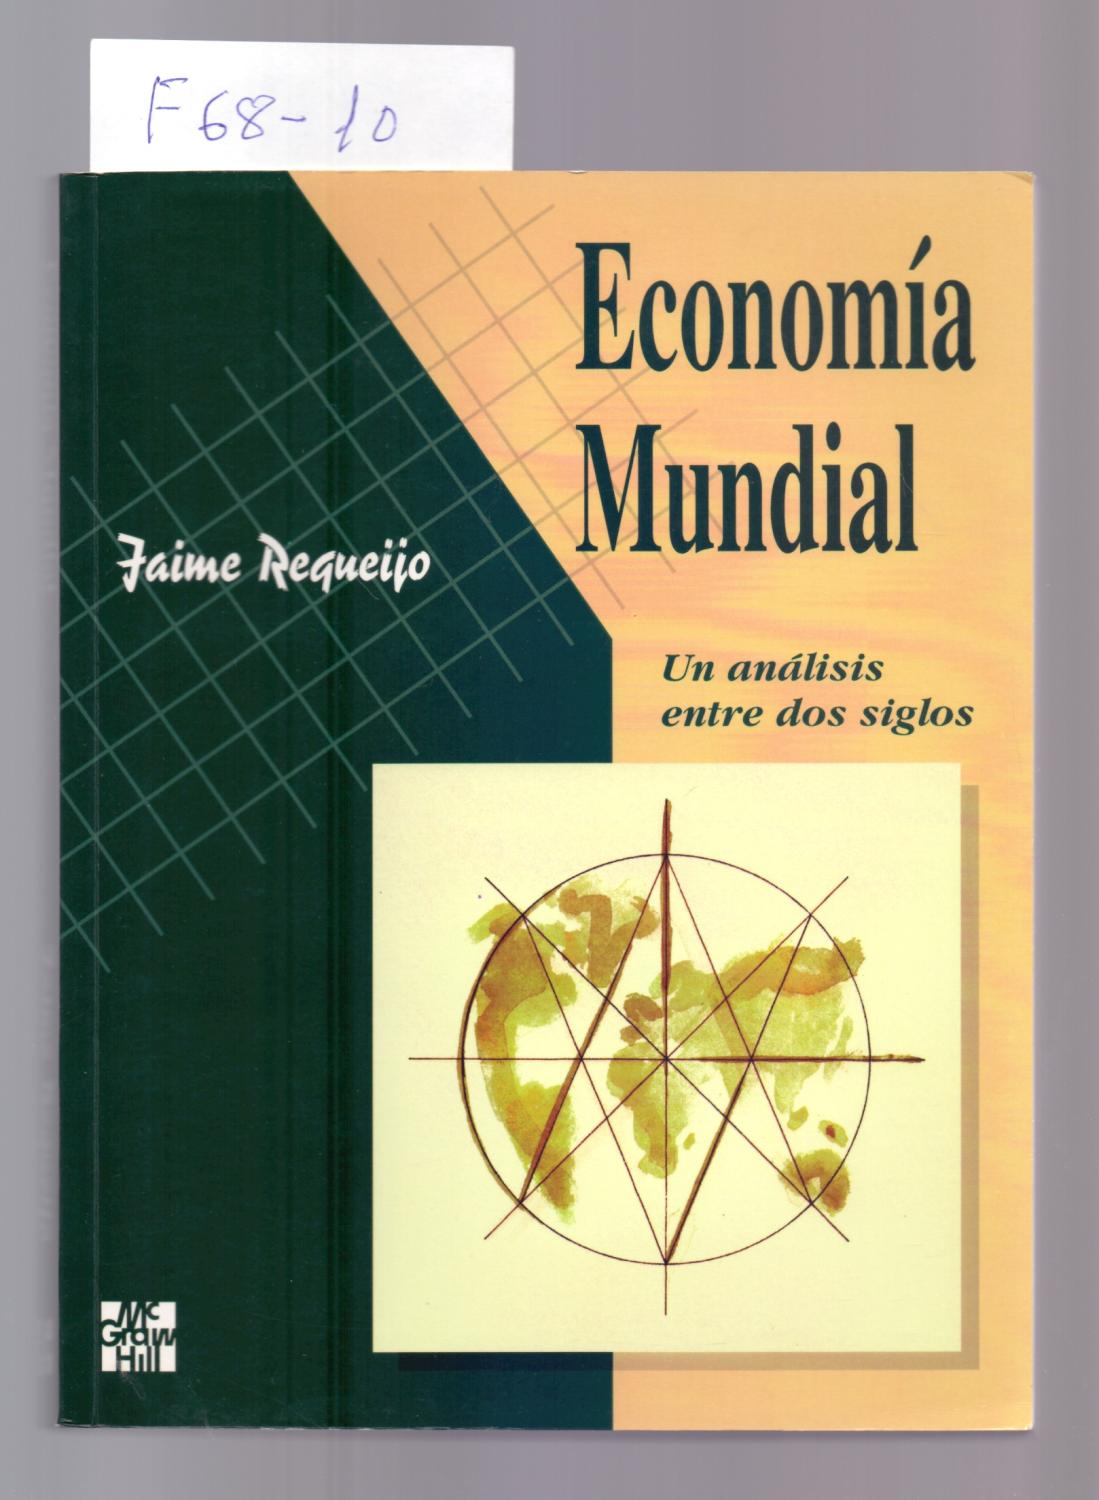 ECONOMIA MUNDIAL, UN ANALISIS ENTRE DOS SIGLOS by Jaime Requeijo ...